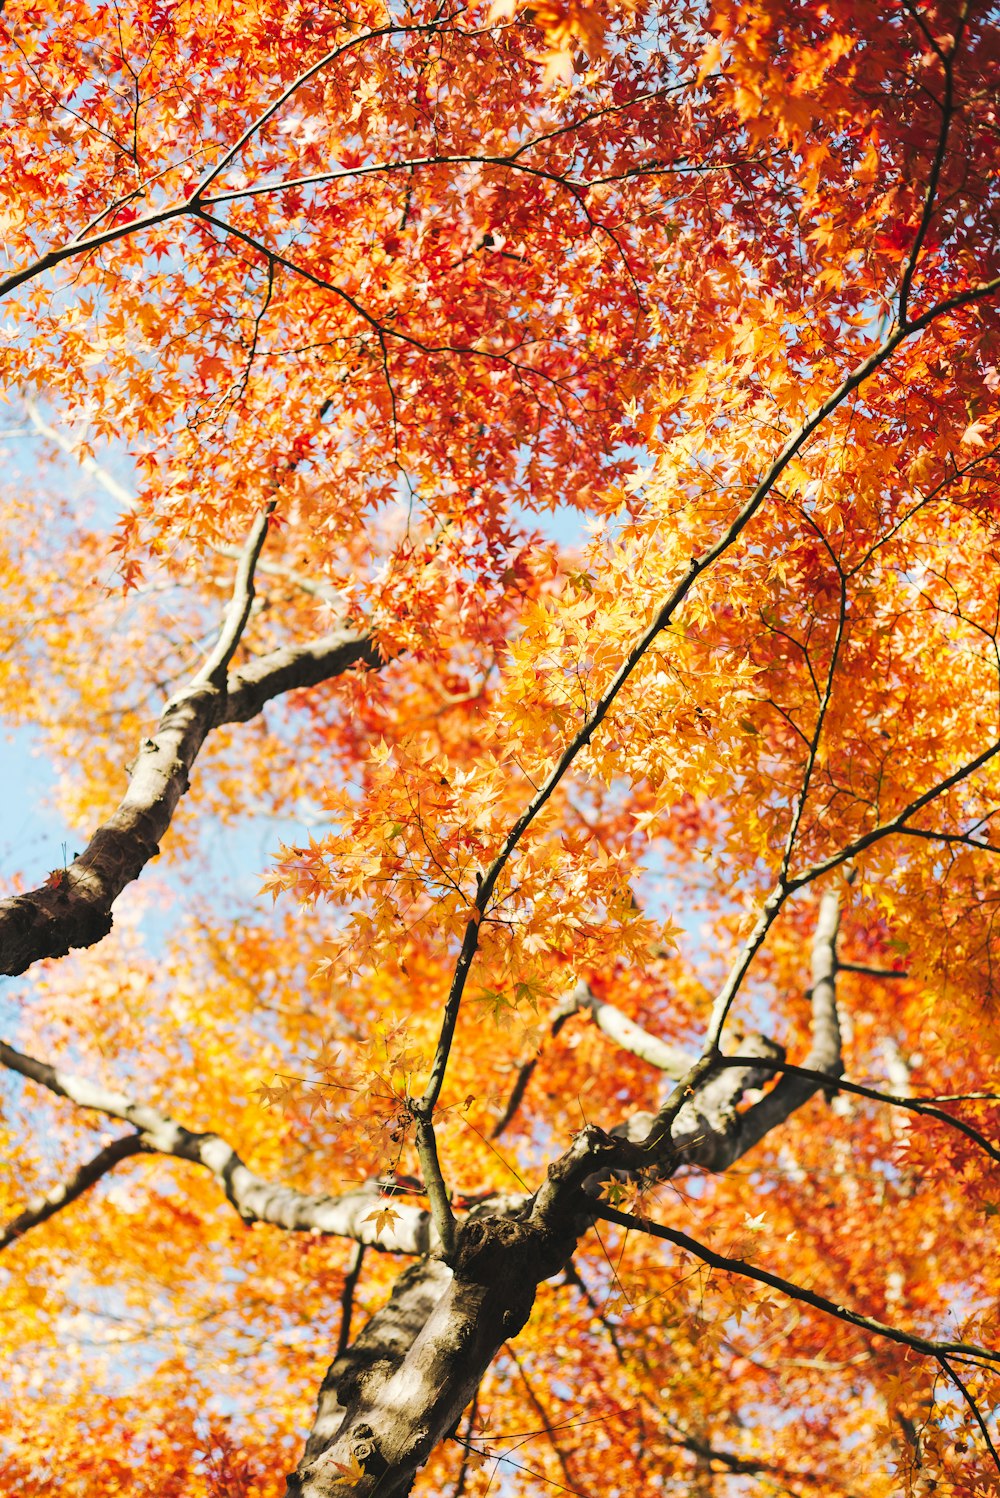 albero delle foglie marroni e gialle